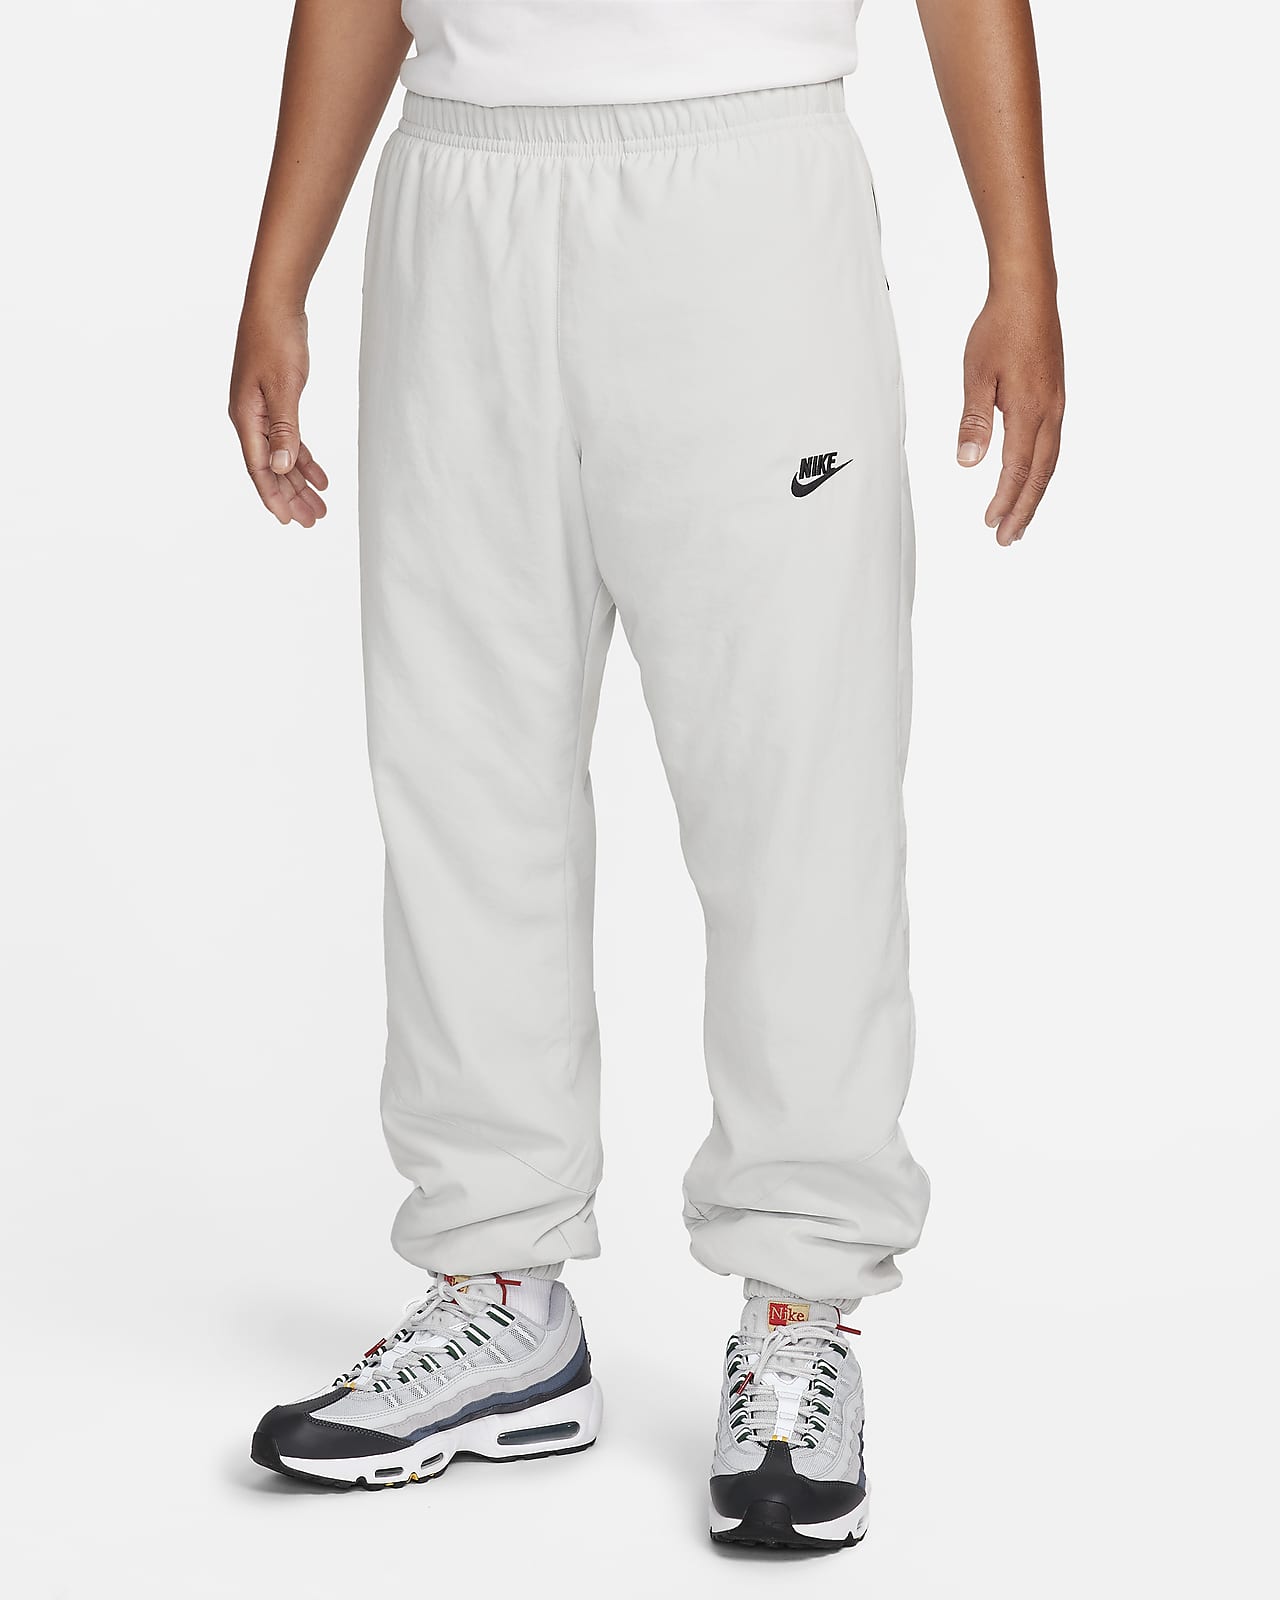 Nike Windrunner Pantalón de tejido Woven para el invierno - Hombre